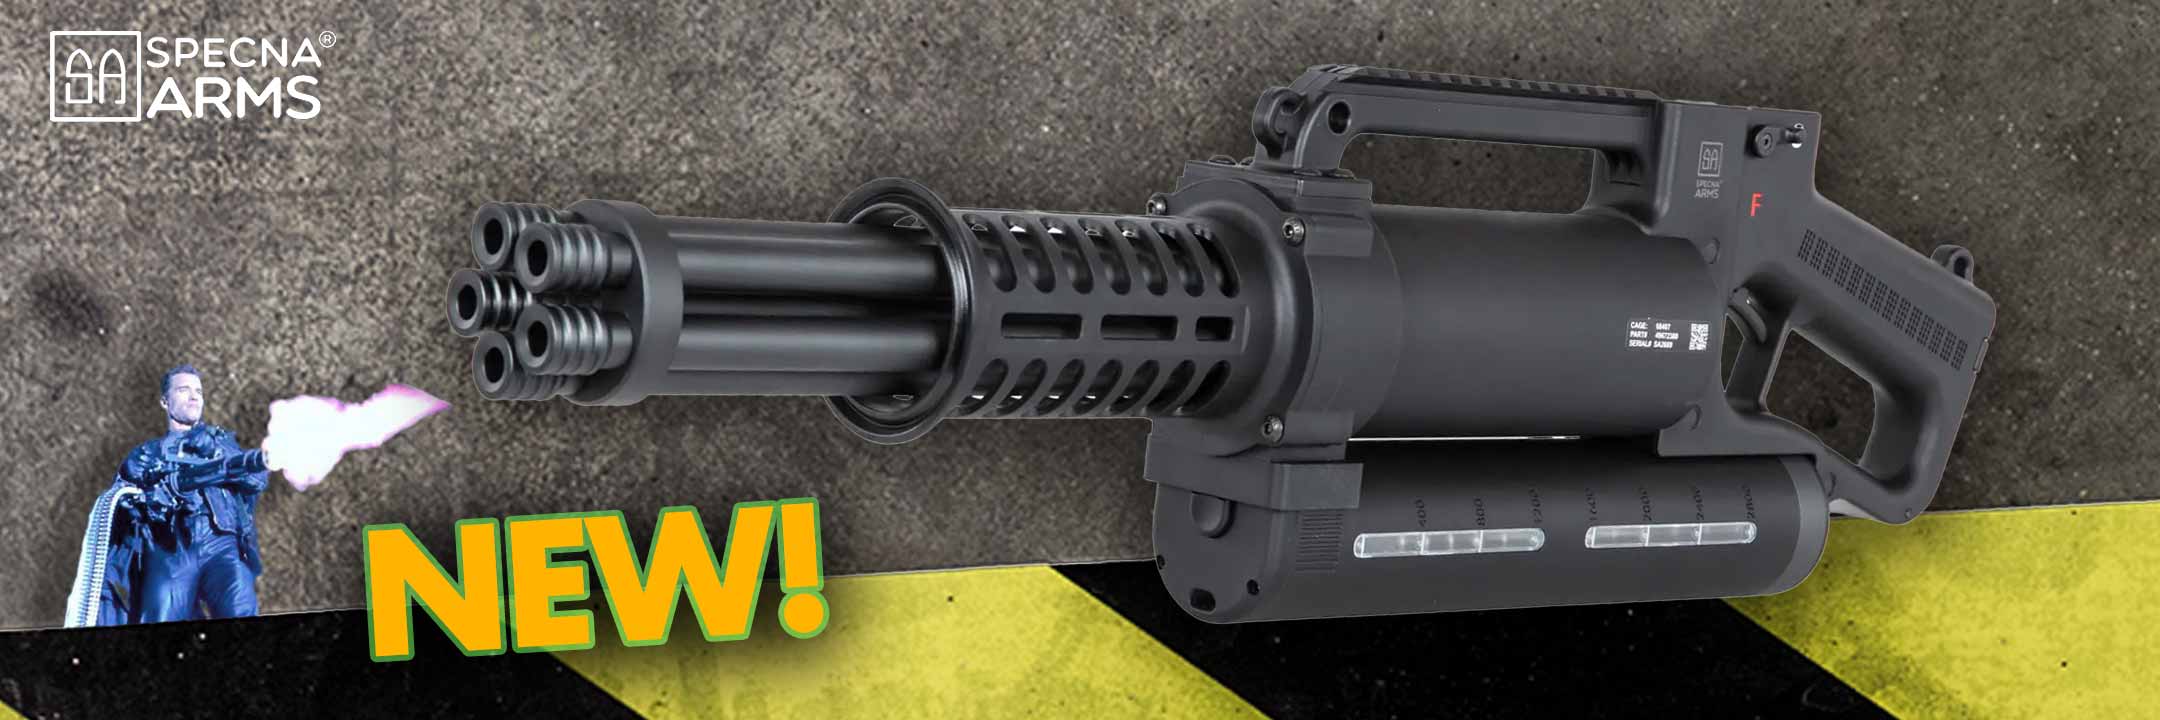 NEW specna Arms Vulcan minigun